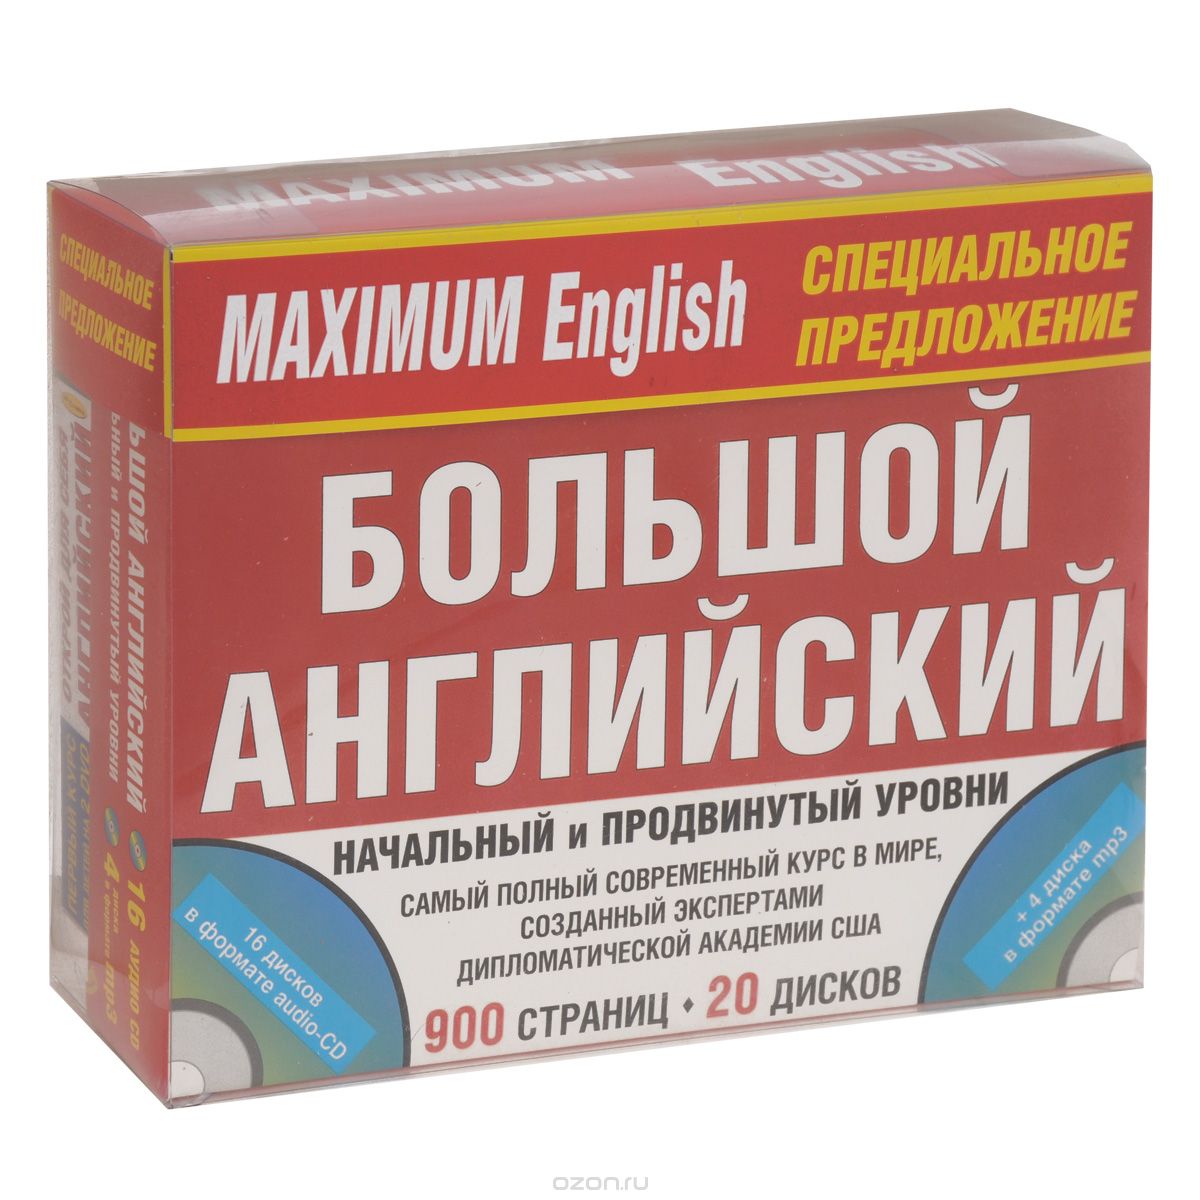 Скачать книгу "Maximum English. Комплект для общения (комплект из 3 книг + 20 CD, 2 DVD)"